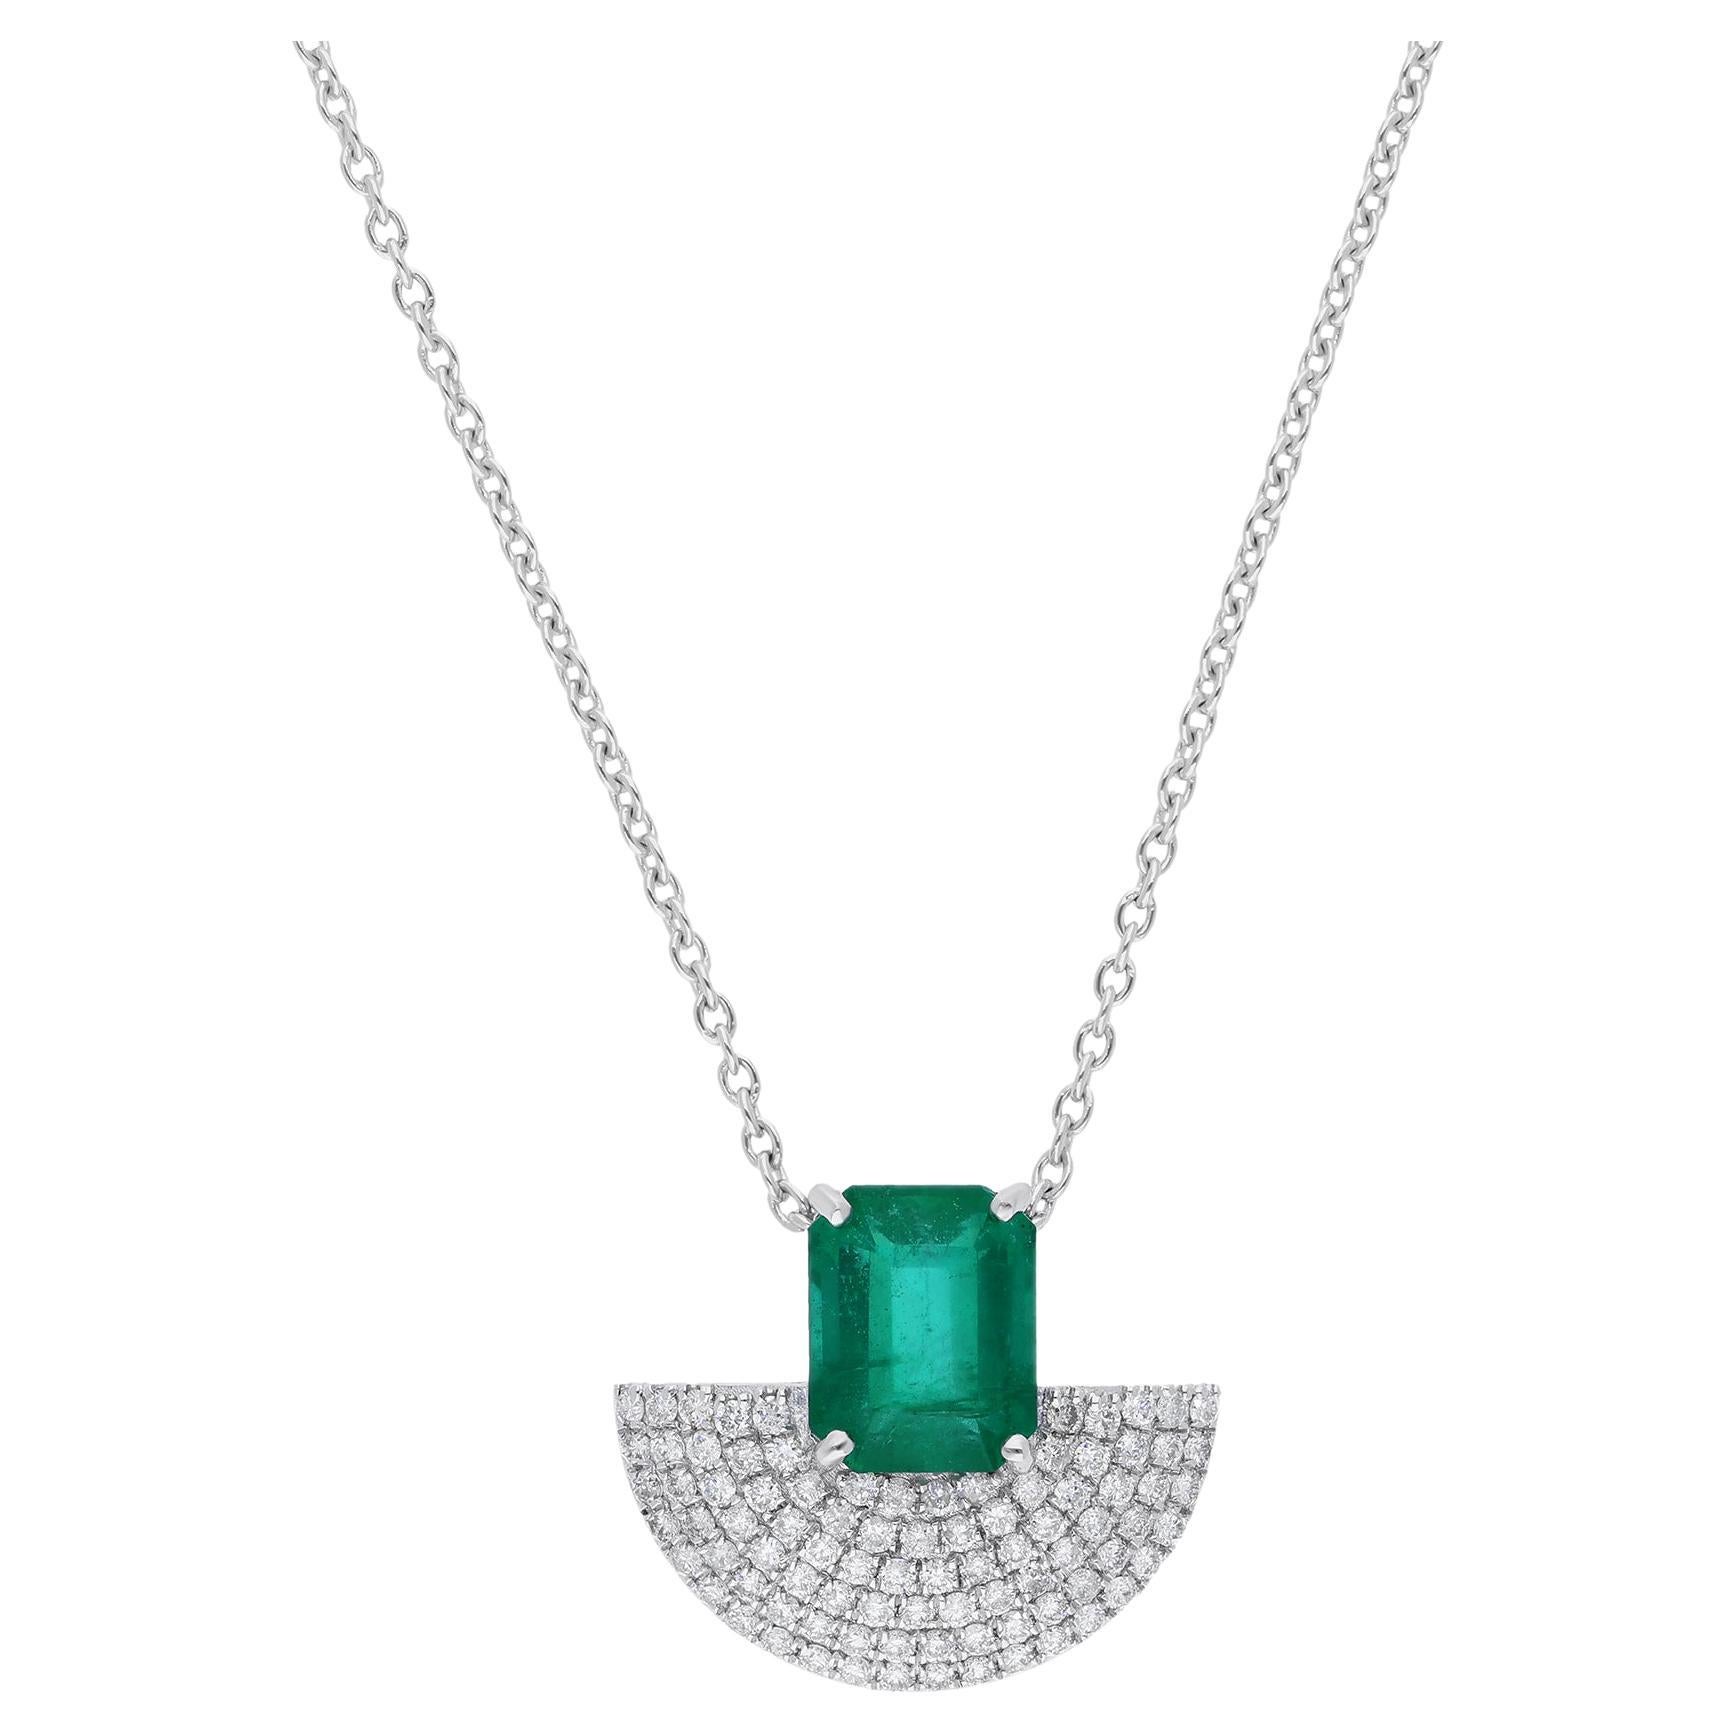 Real Zambian Emerald Hand Fan Charm Pendant Necklace Diamond 18 Karat White Gold